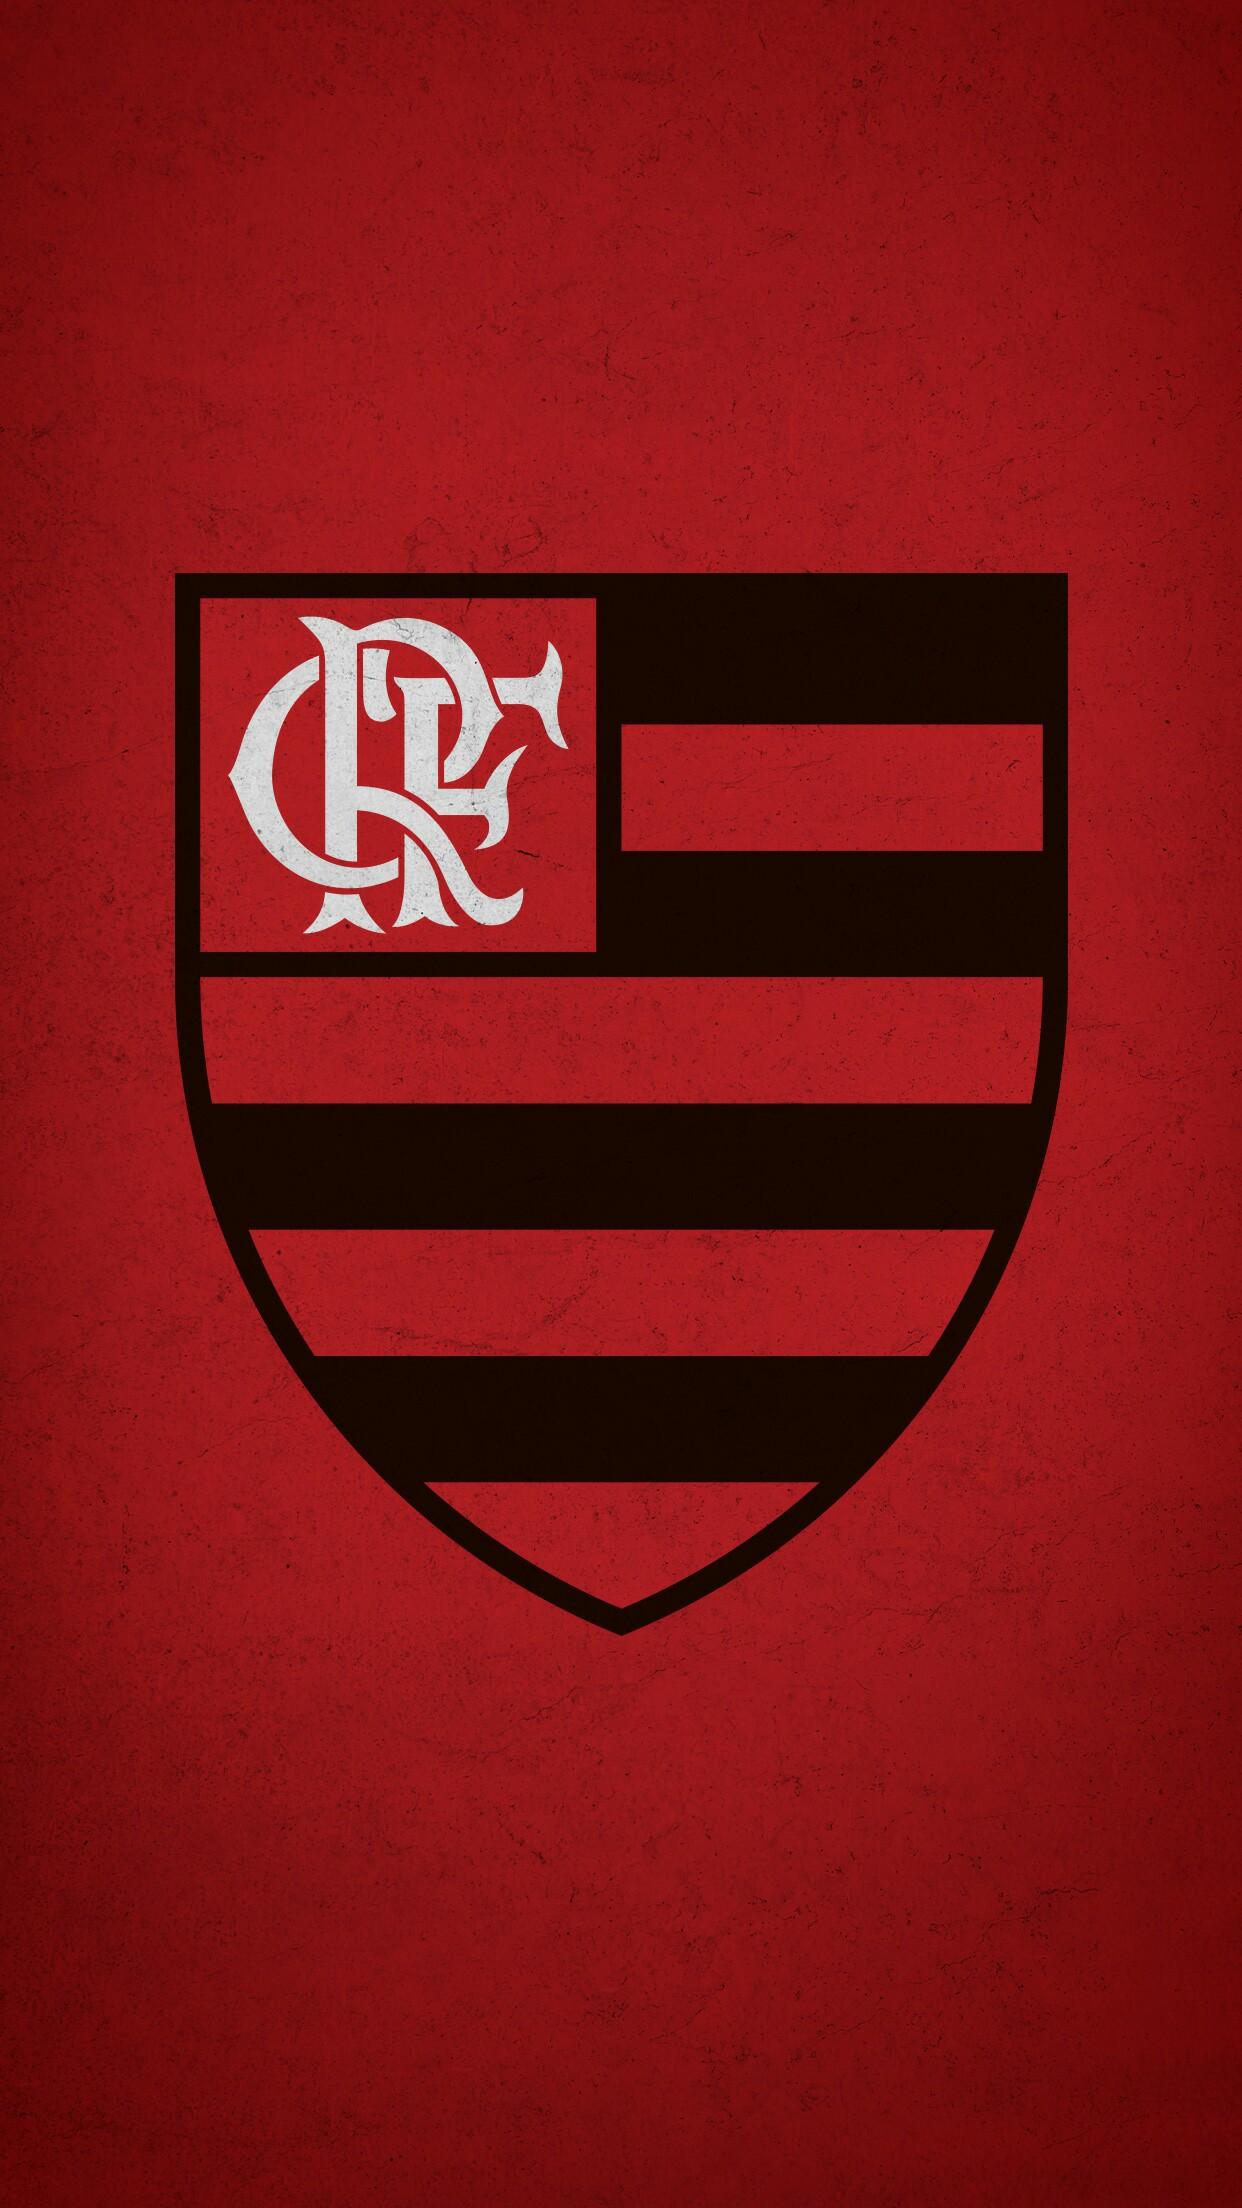 Flamengo 2019 Wallpapers - Wallpaper Cave